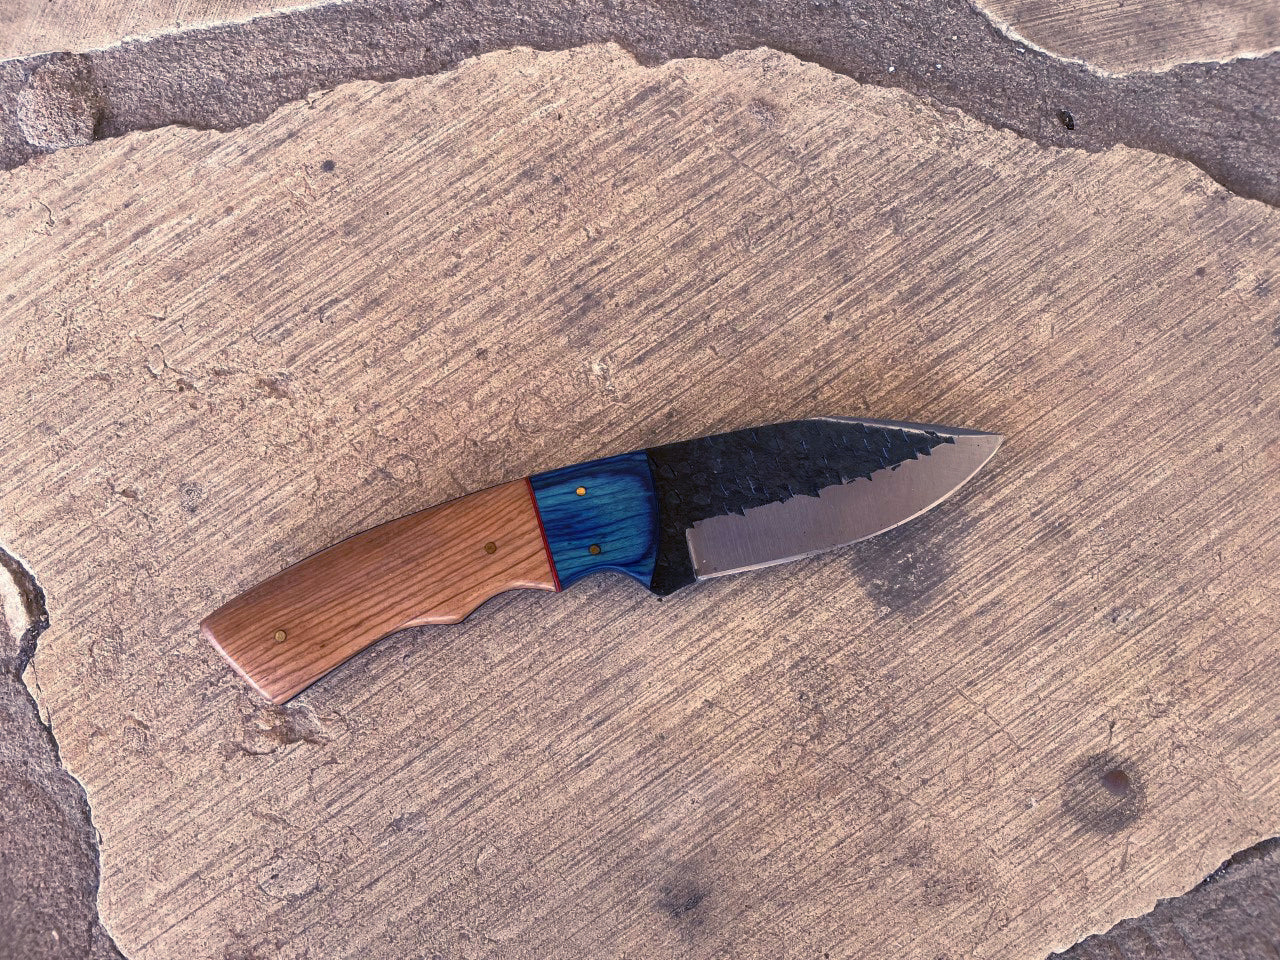 Knife blonde & blue wood